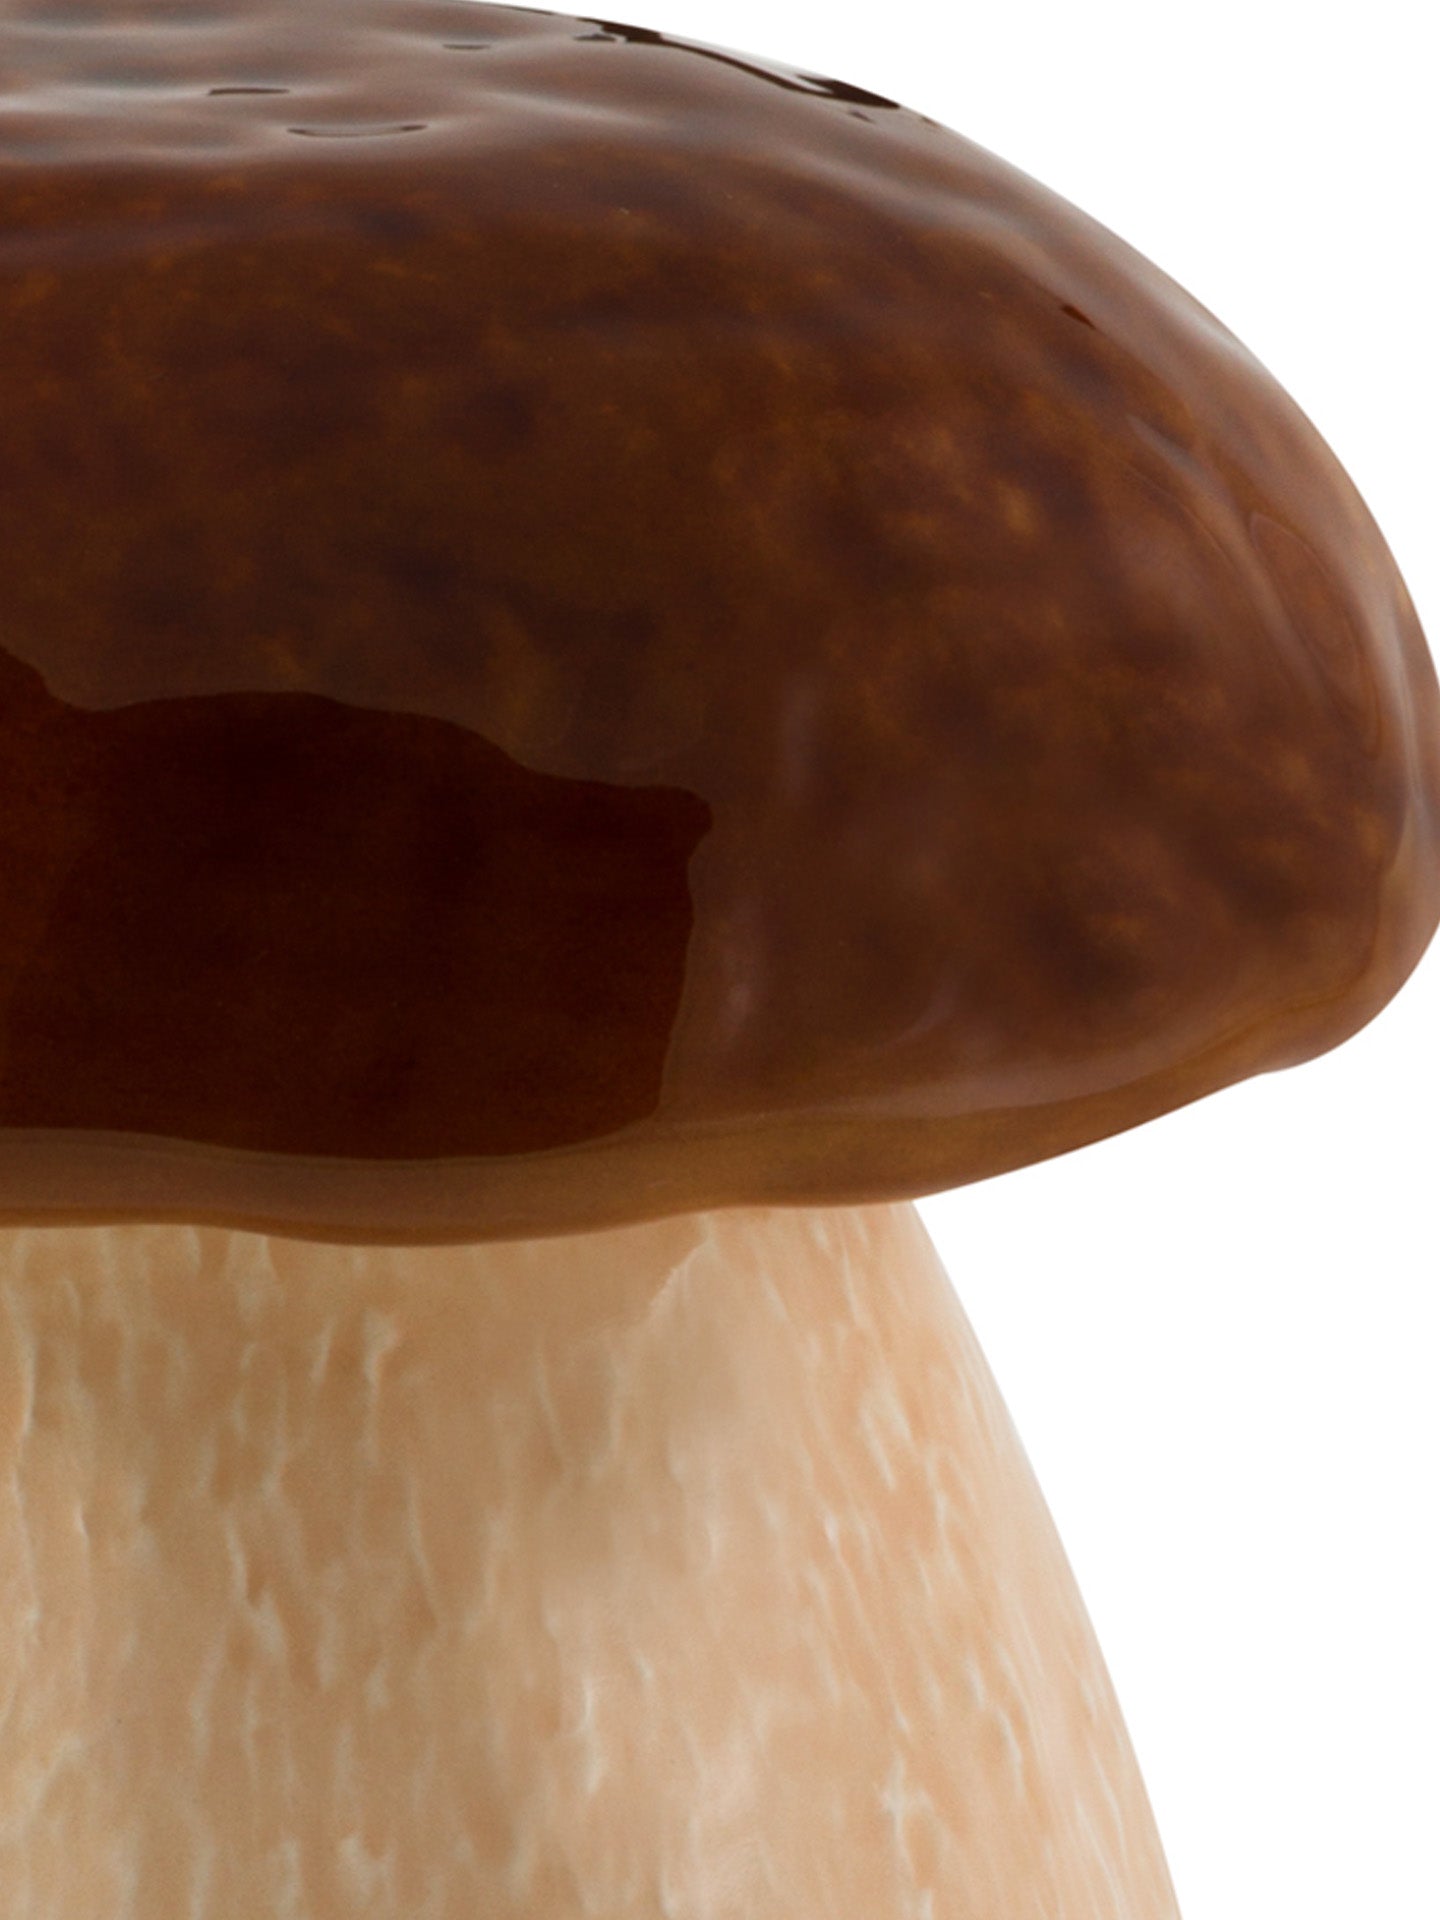 Mushroom Jar, Big